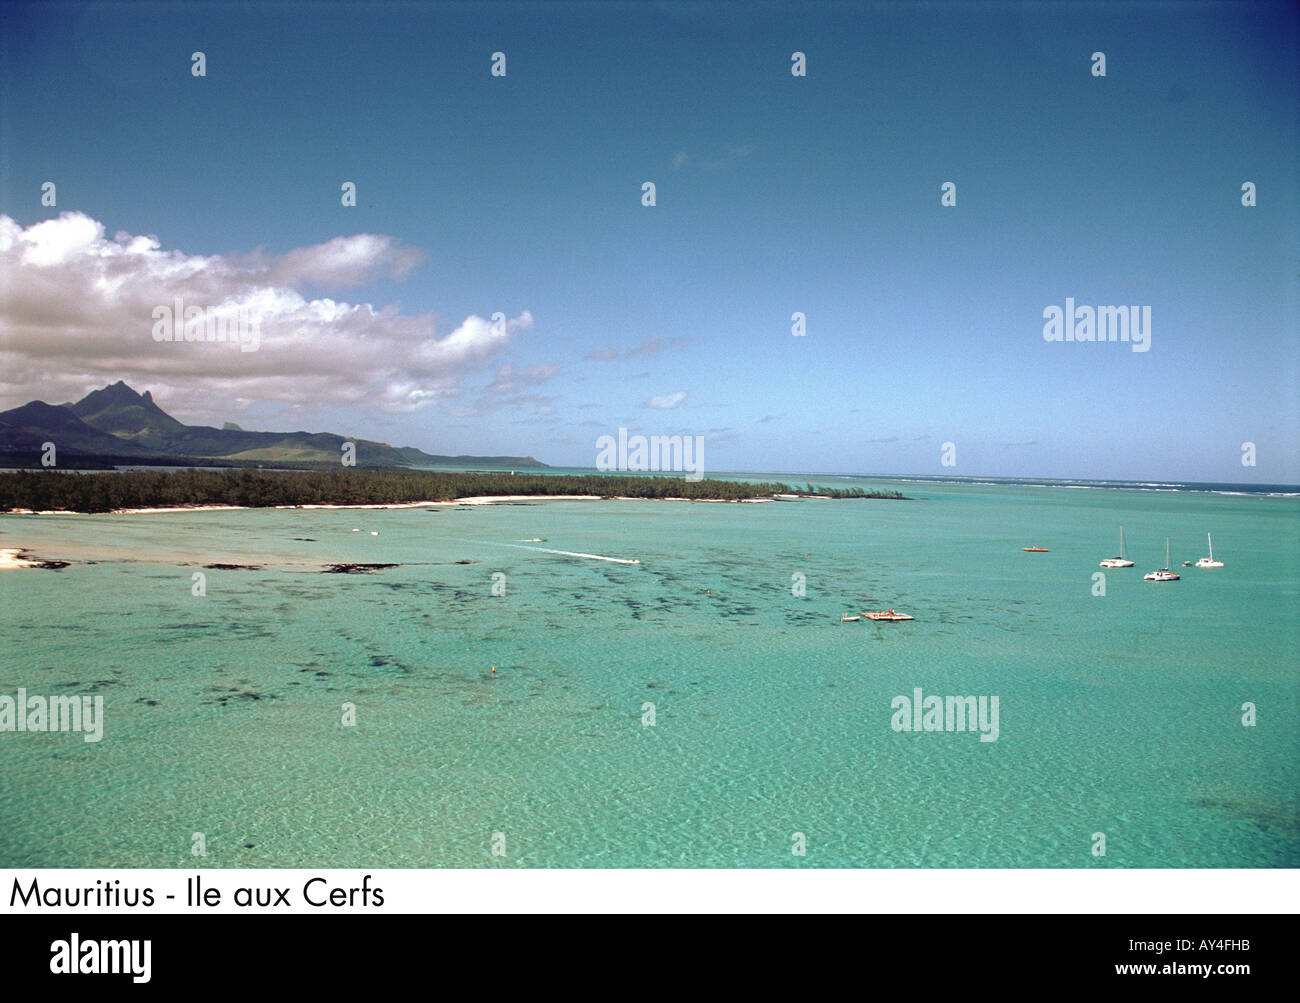 Ile aux Cerfs, lagoon, landscape Stock Photo